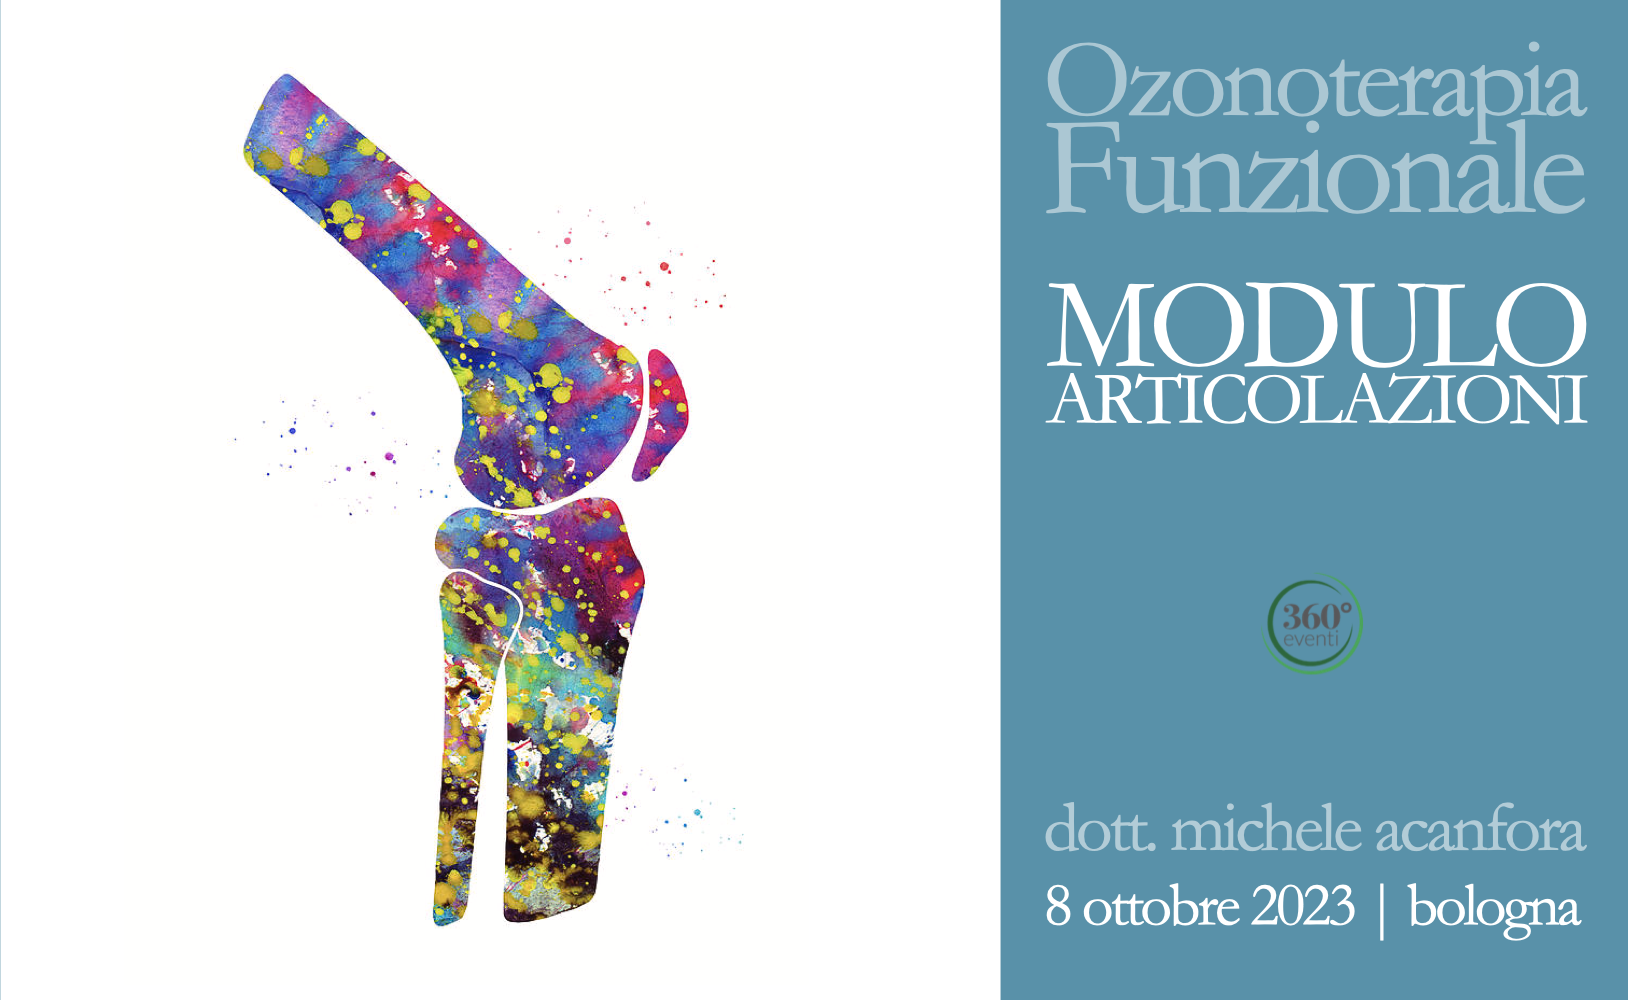 OZONOTERAPIA FUNZIONALE | MODULO ARTICOLAZIONI